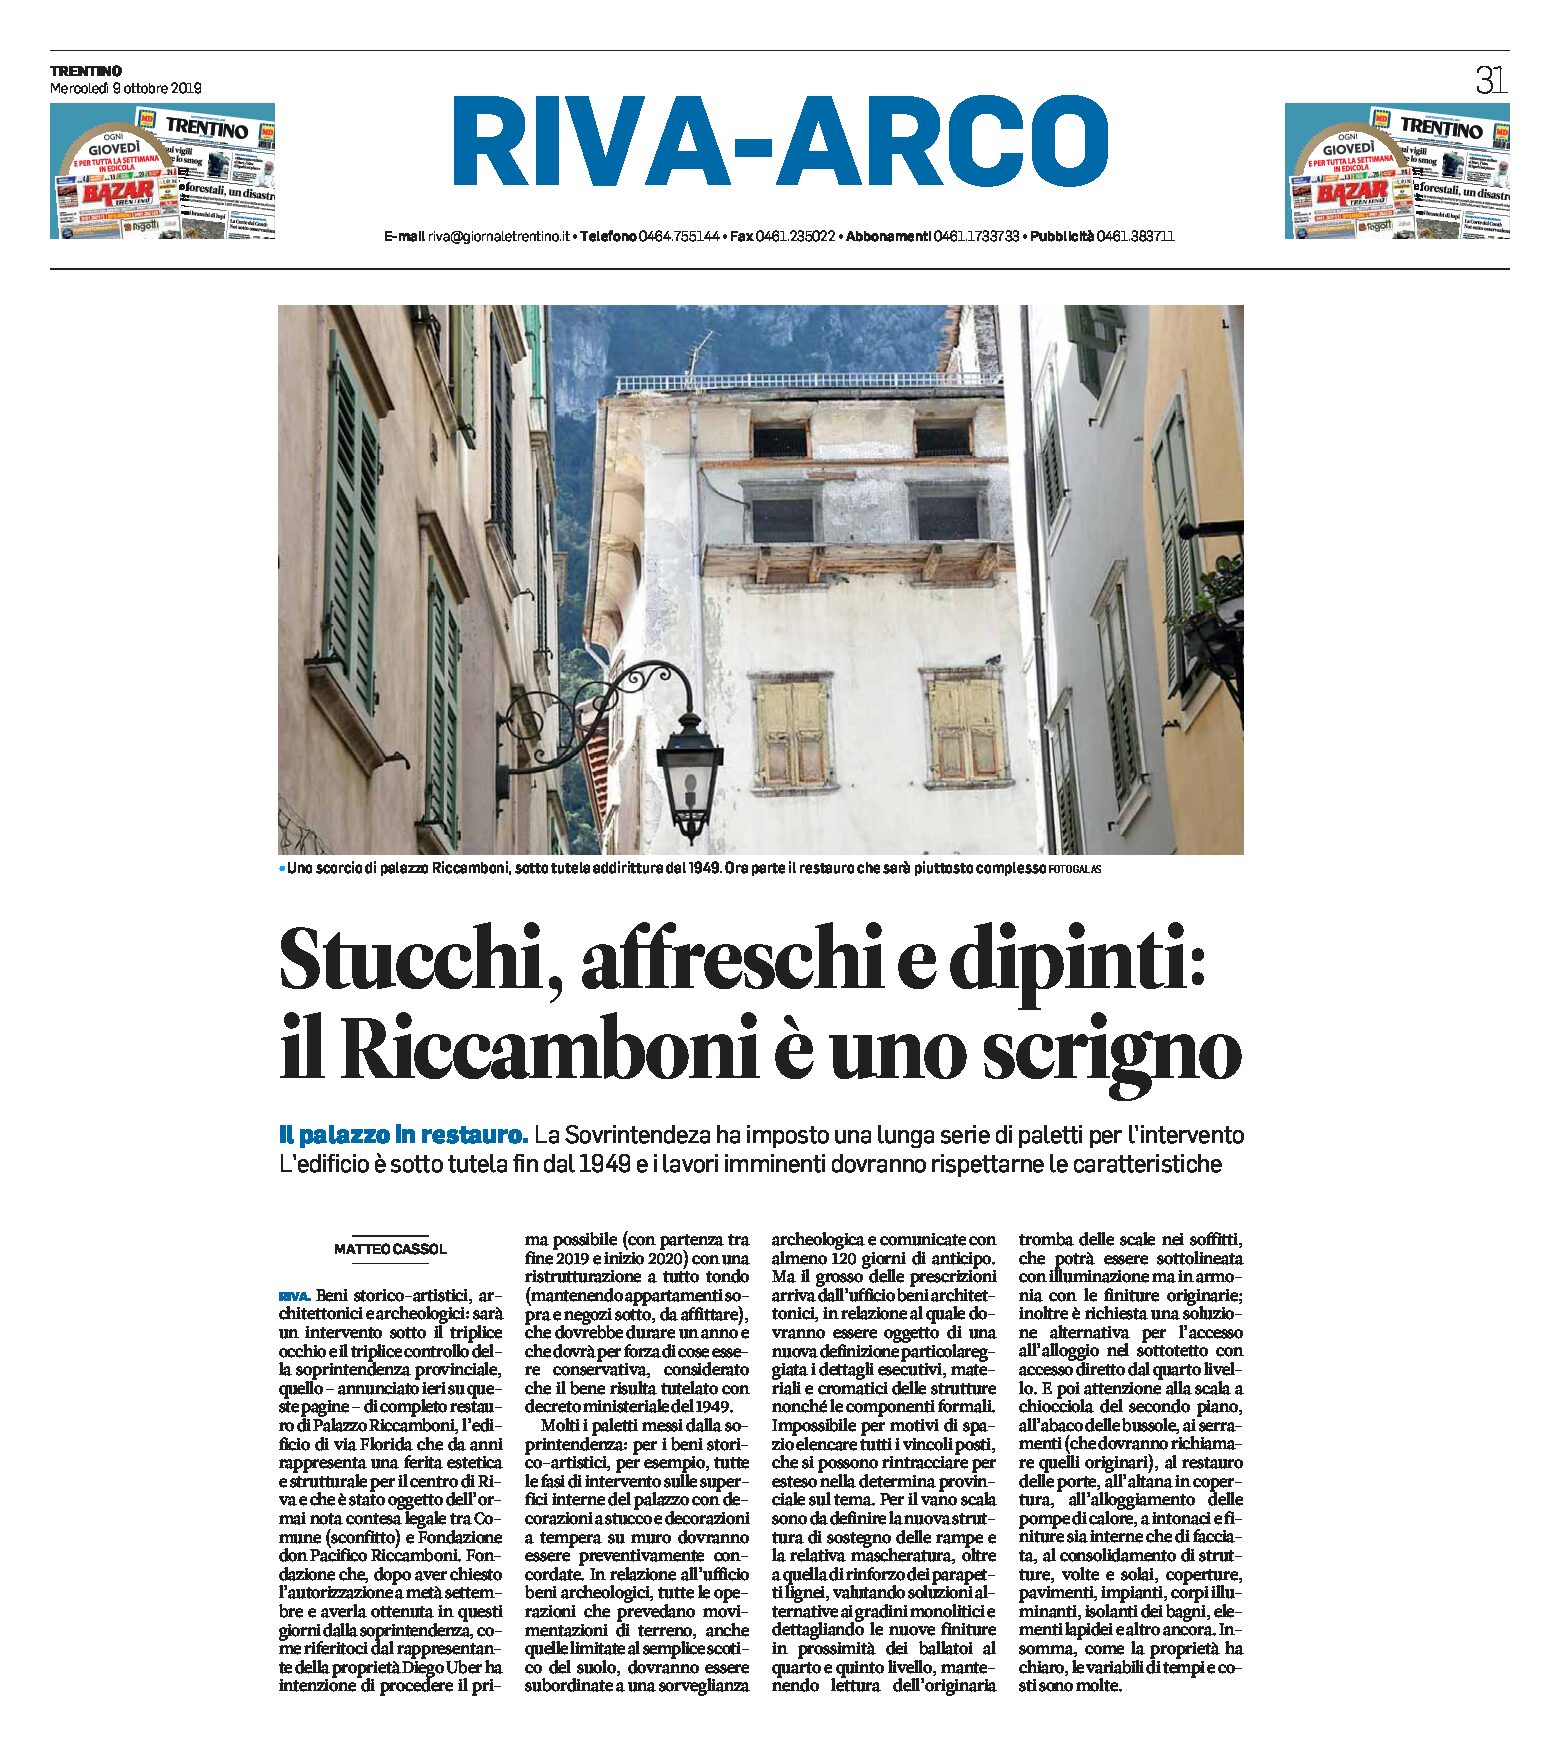 Riva: stucchi, affreschi e dipinti, il Palazzo Riccamboni in restauro è uno scrigno sotto tutela